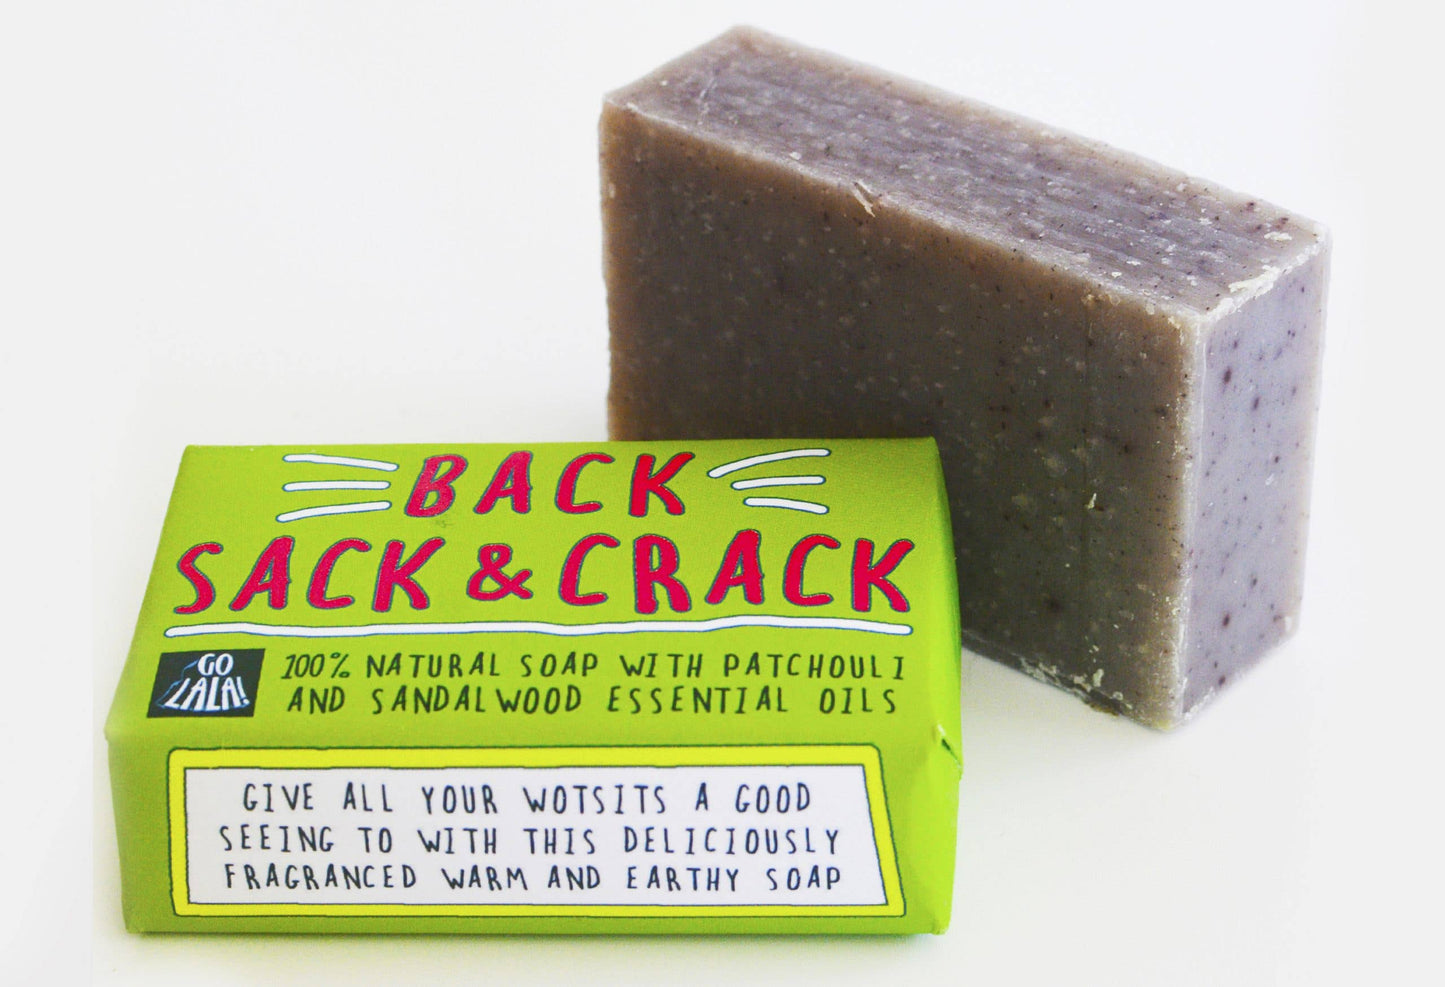 Back, Sack & Crack Soap Bar Funny Rude Novelty Gift